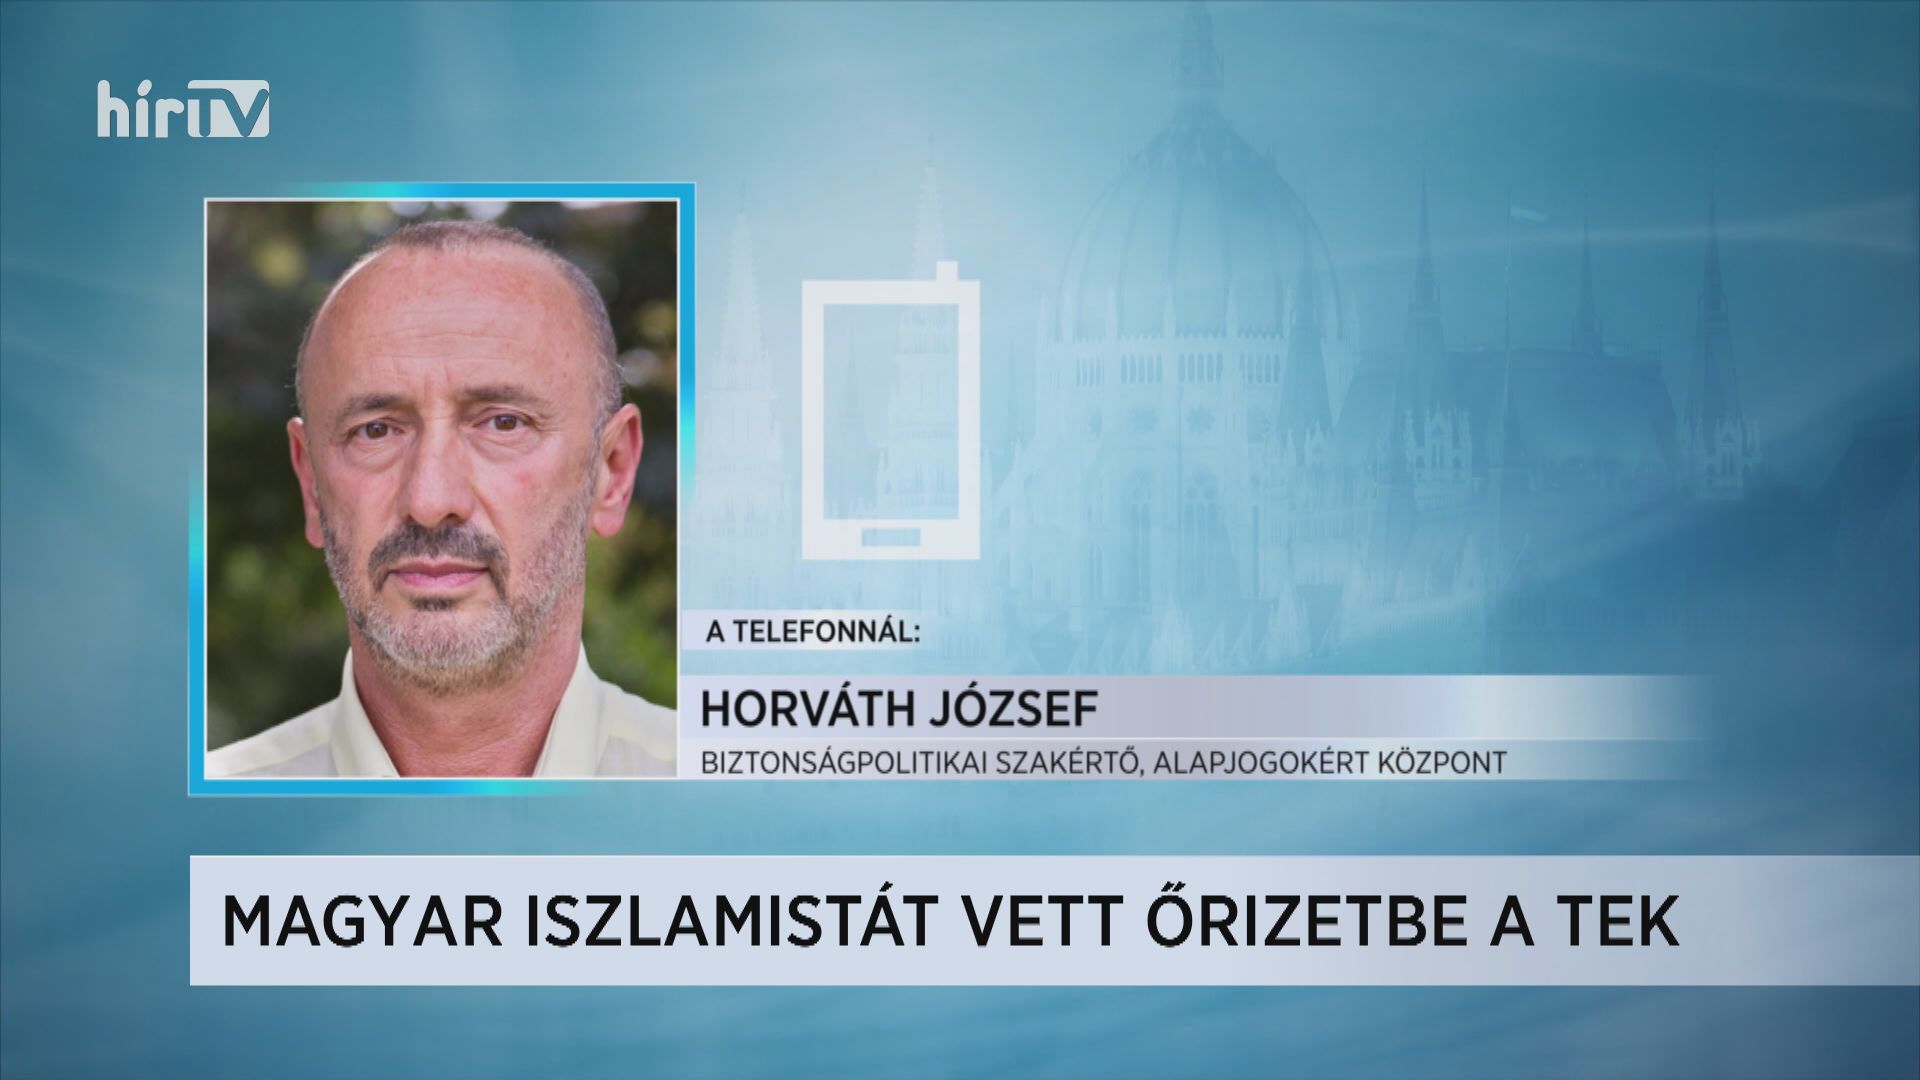 Horváth József: Magyarország a radikális iszlamisták szemében egy kiemelt célpont